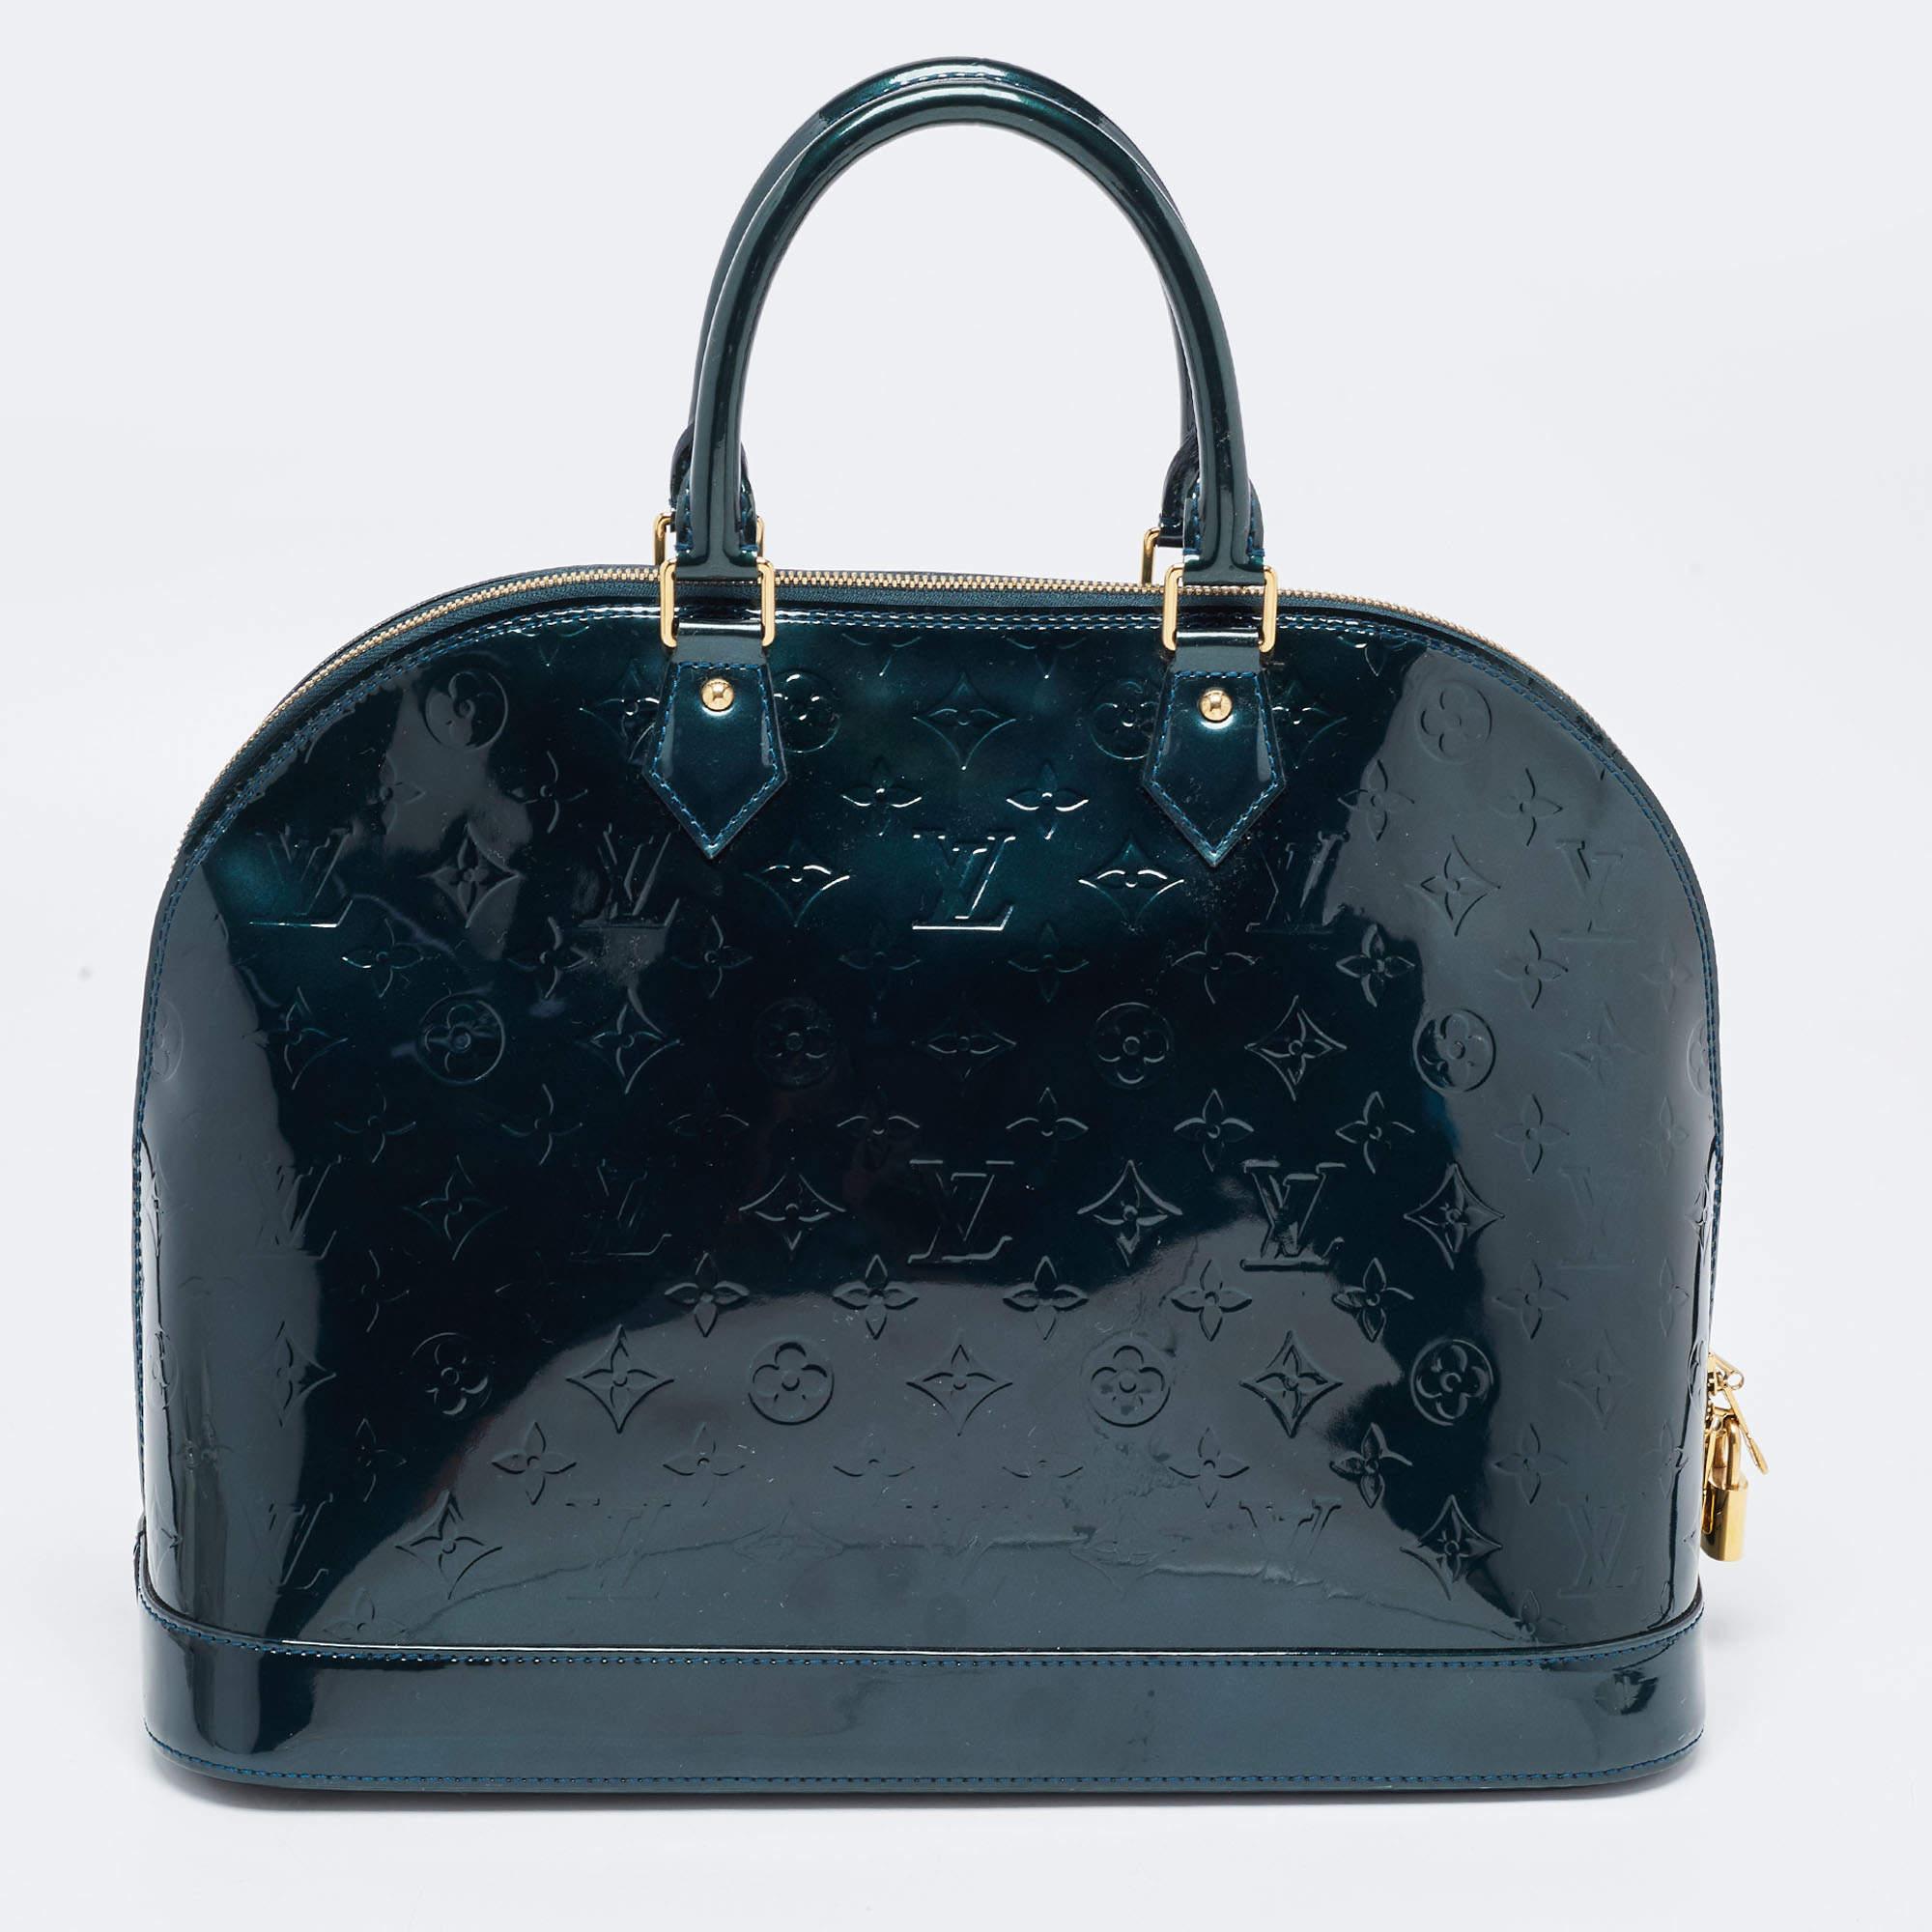 Eine klassische Handtasche verspricht dauerhafte Attraktivität und unterstreicht Ihren Stil immer wieder aufs Neue. Diese Designertasche ist eine solche Kreation. Das ist ein guter Kauf.

Enthält: Vorhängeschloss